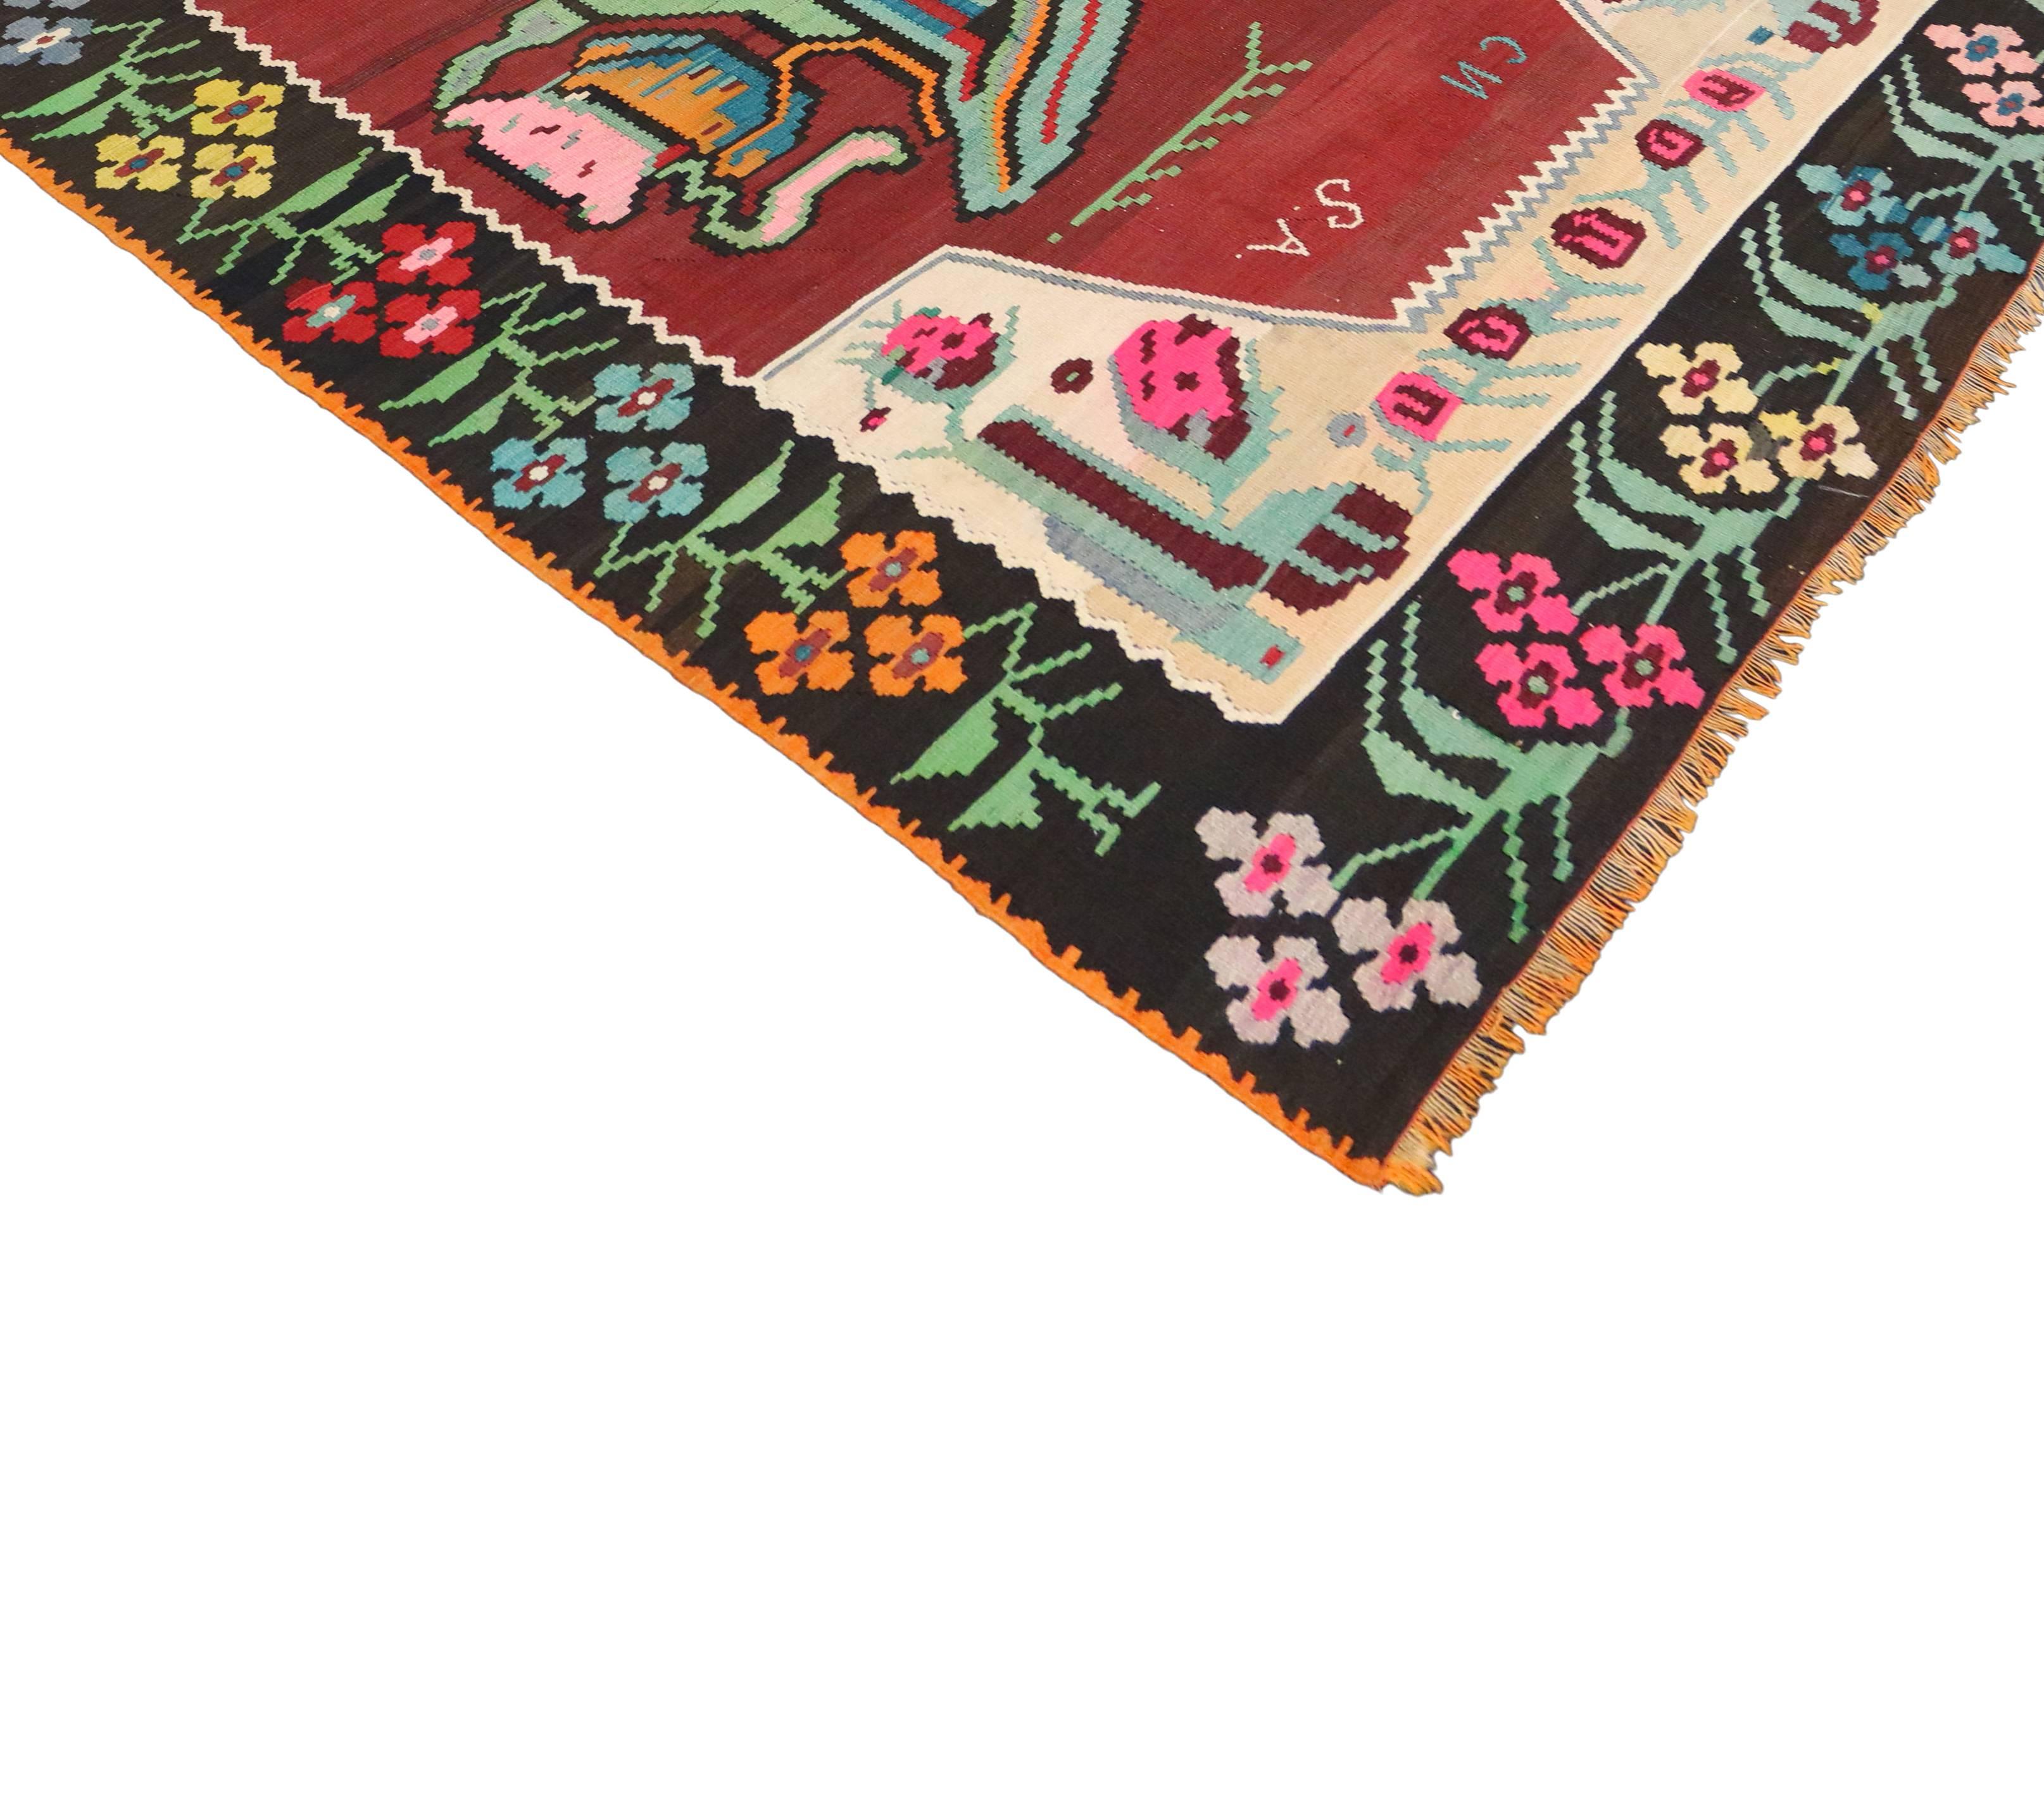 Hand-Woven Vintage Floral Turkish Kilim Rug, Flat-Weave Flower Kilim Rug